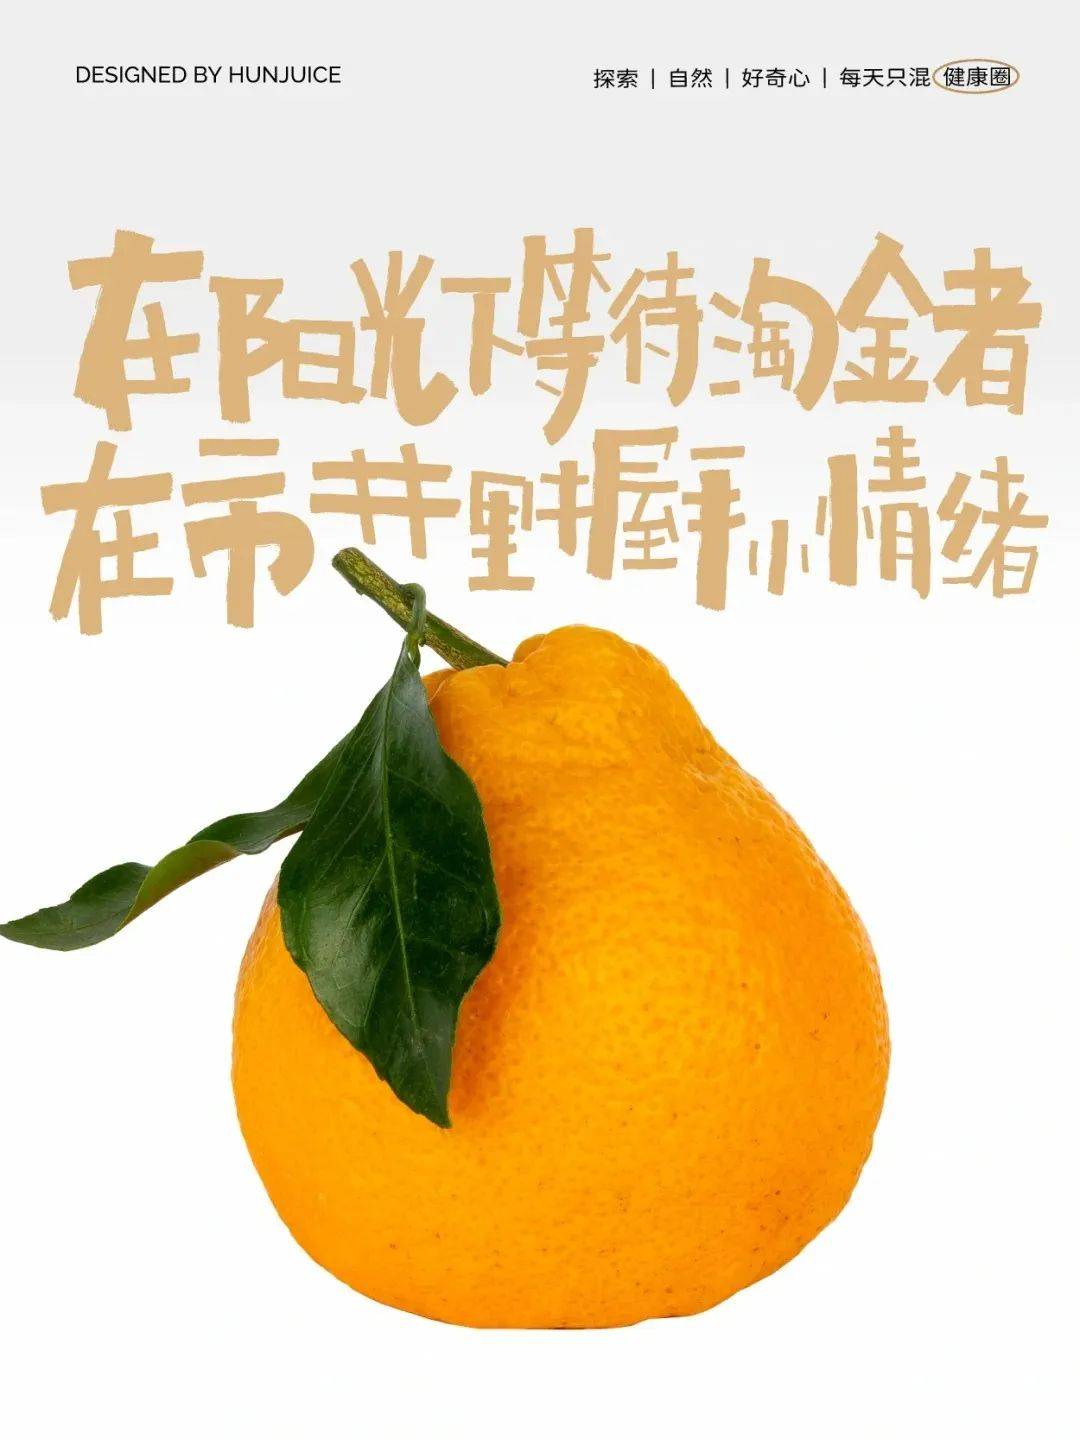 小橘子的召唤_小橘子的召唤_小橘子的召唤